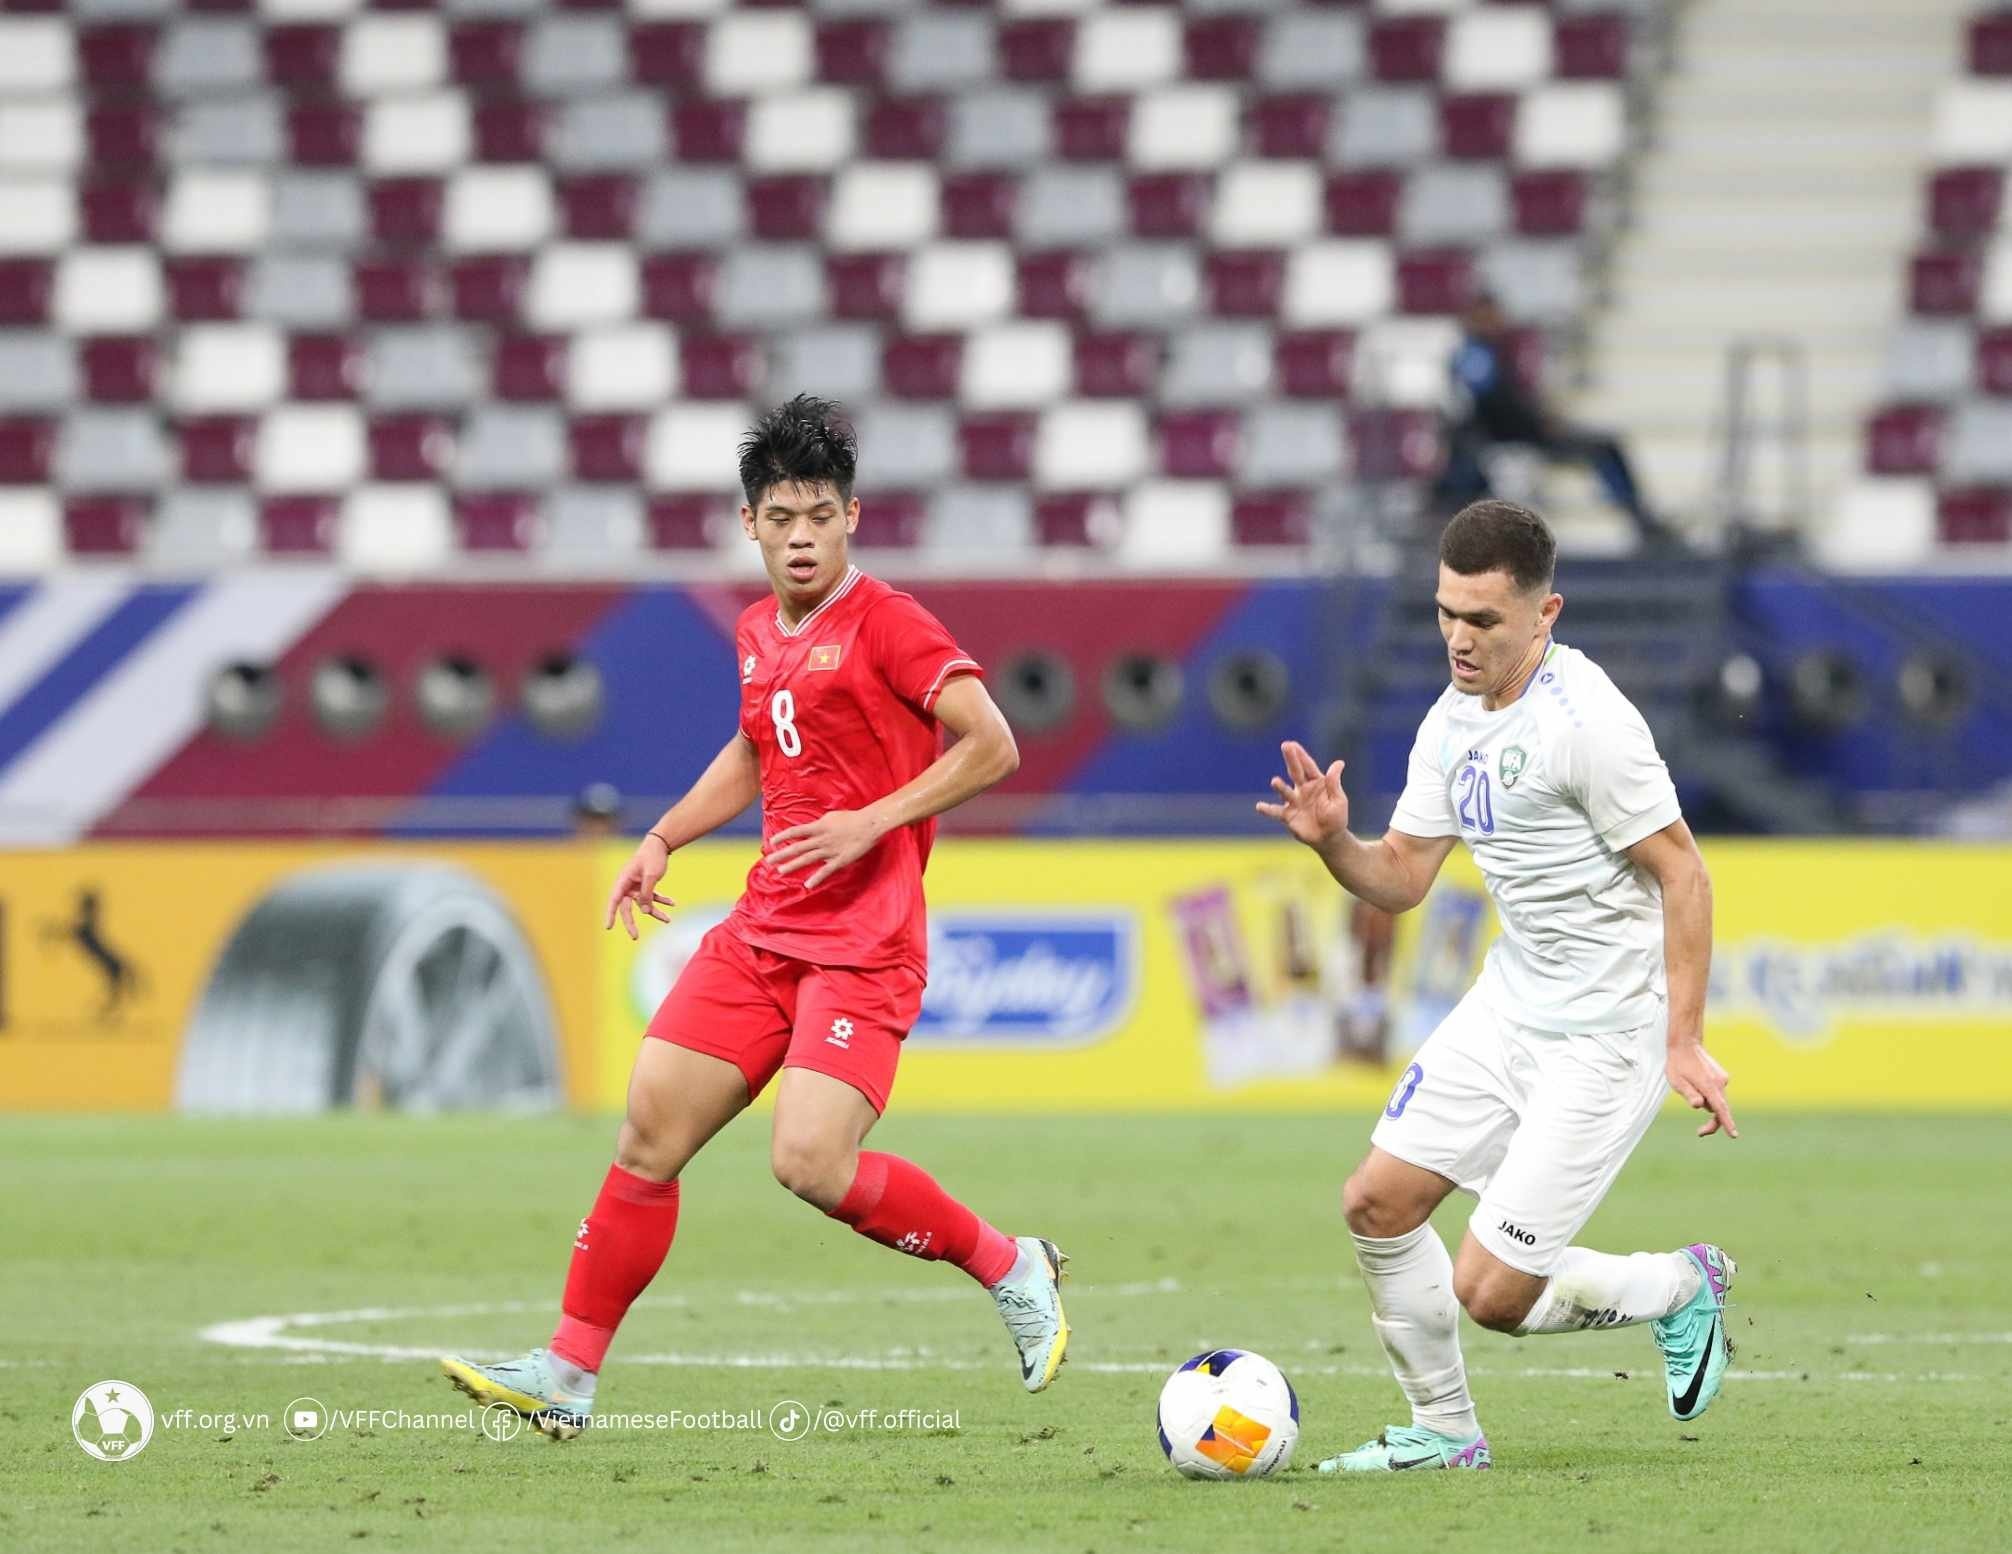 Thua Uzbekistan 0-3, U23 Việt Nam chạm trán Iraq ở tứ kết giải châu Á - ảnh 2